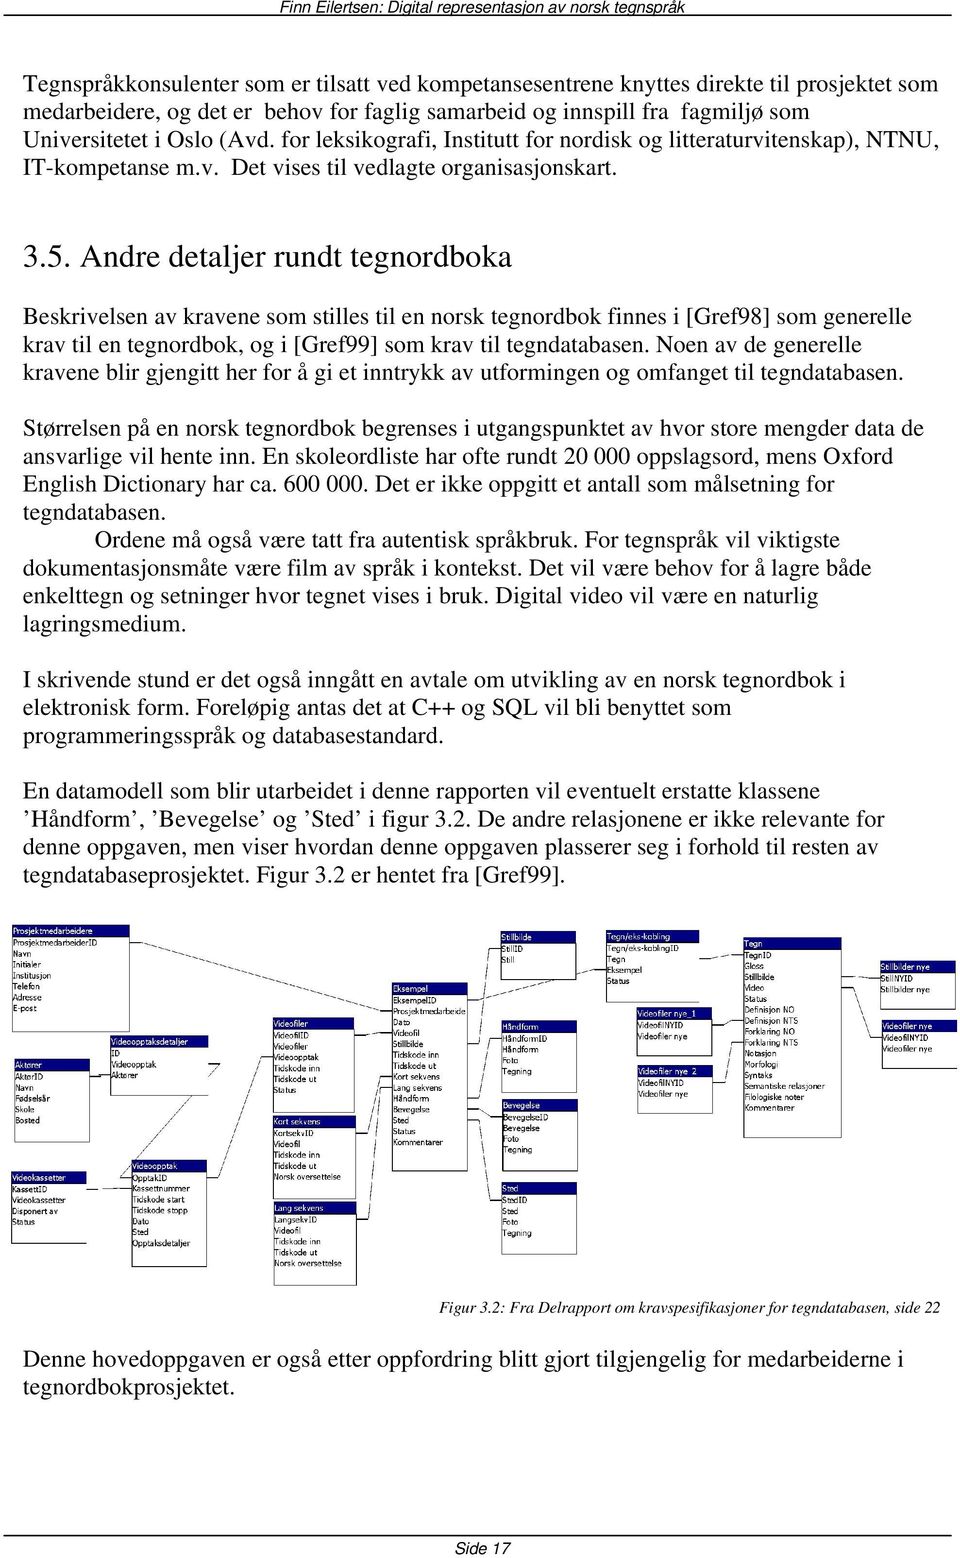 Andre detaljer rundt tegnordboka Beskrivelsen av kravene som stilles til en norsk tegnordbok finnes i [Gref98] som generelle krav til en tegnordbok, og i [Gref99] som krav til tegndatabasen.